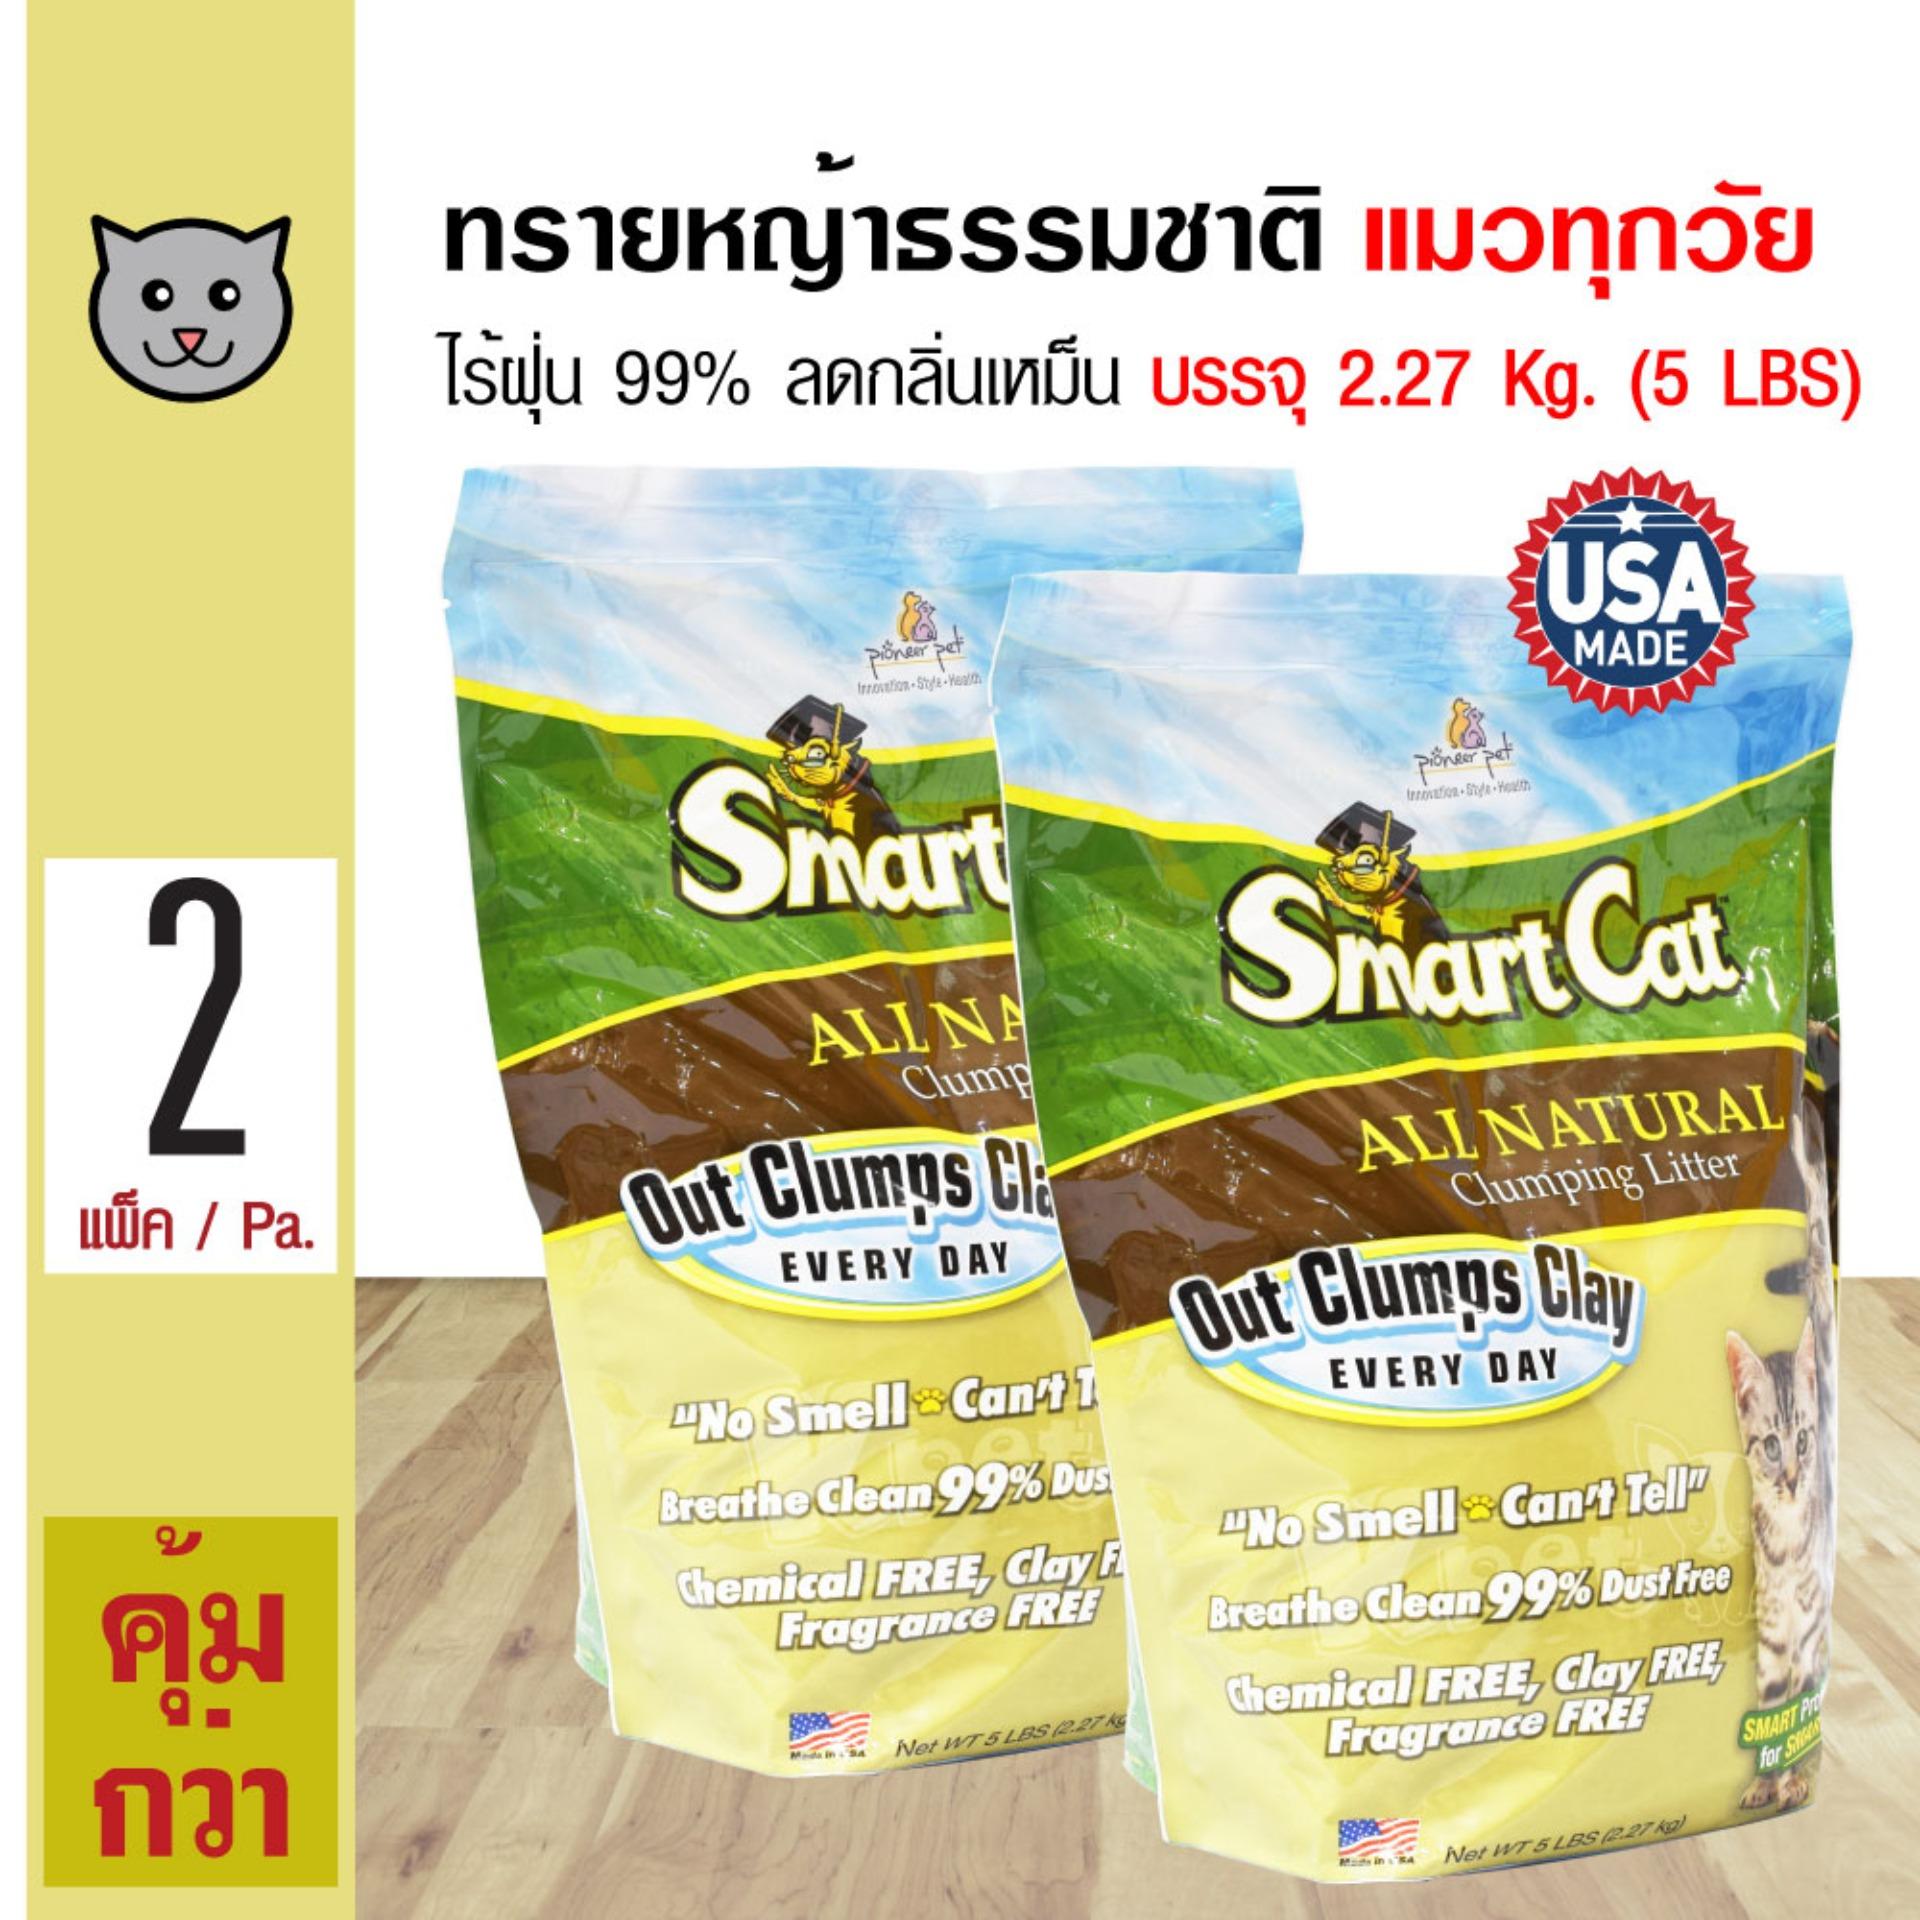 SmartCat ทรายแมว ทรายหญ้าธรรมชาติ 100% ปลอดภัย ไร้ฝุ่น ไร้กลิ่น จับตัวเป็นก้อน บรรจุ 2.27 กิโลกรัม (5 lbs) x 2 ถุง